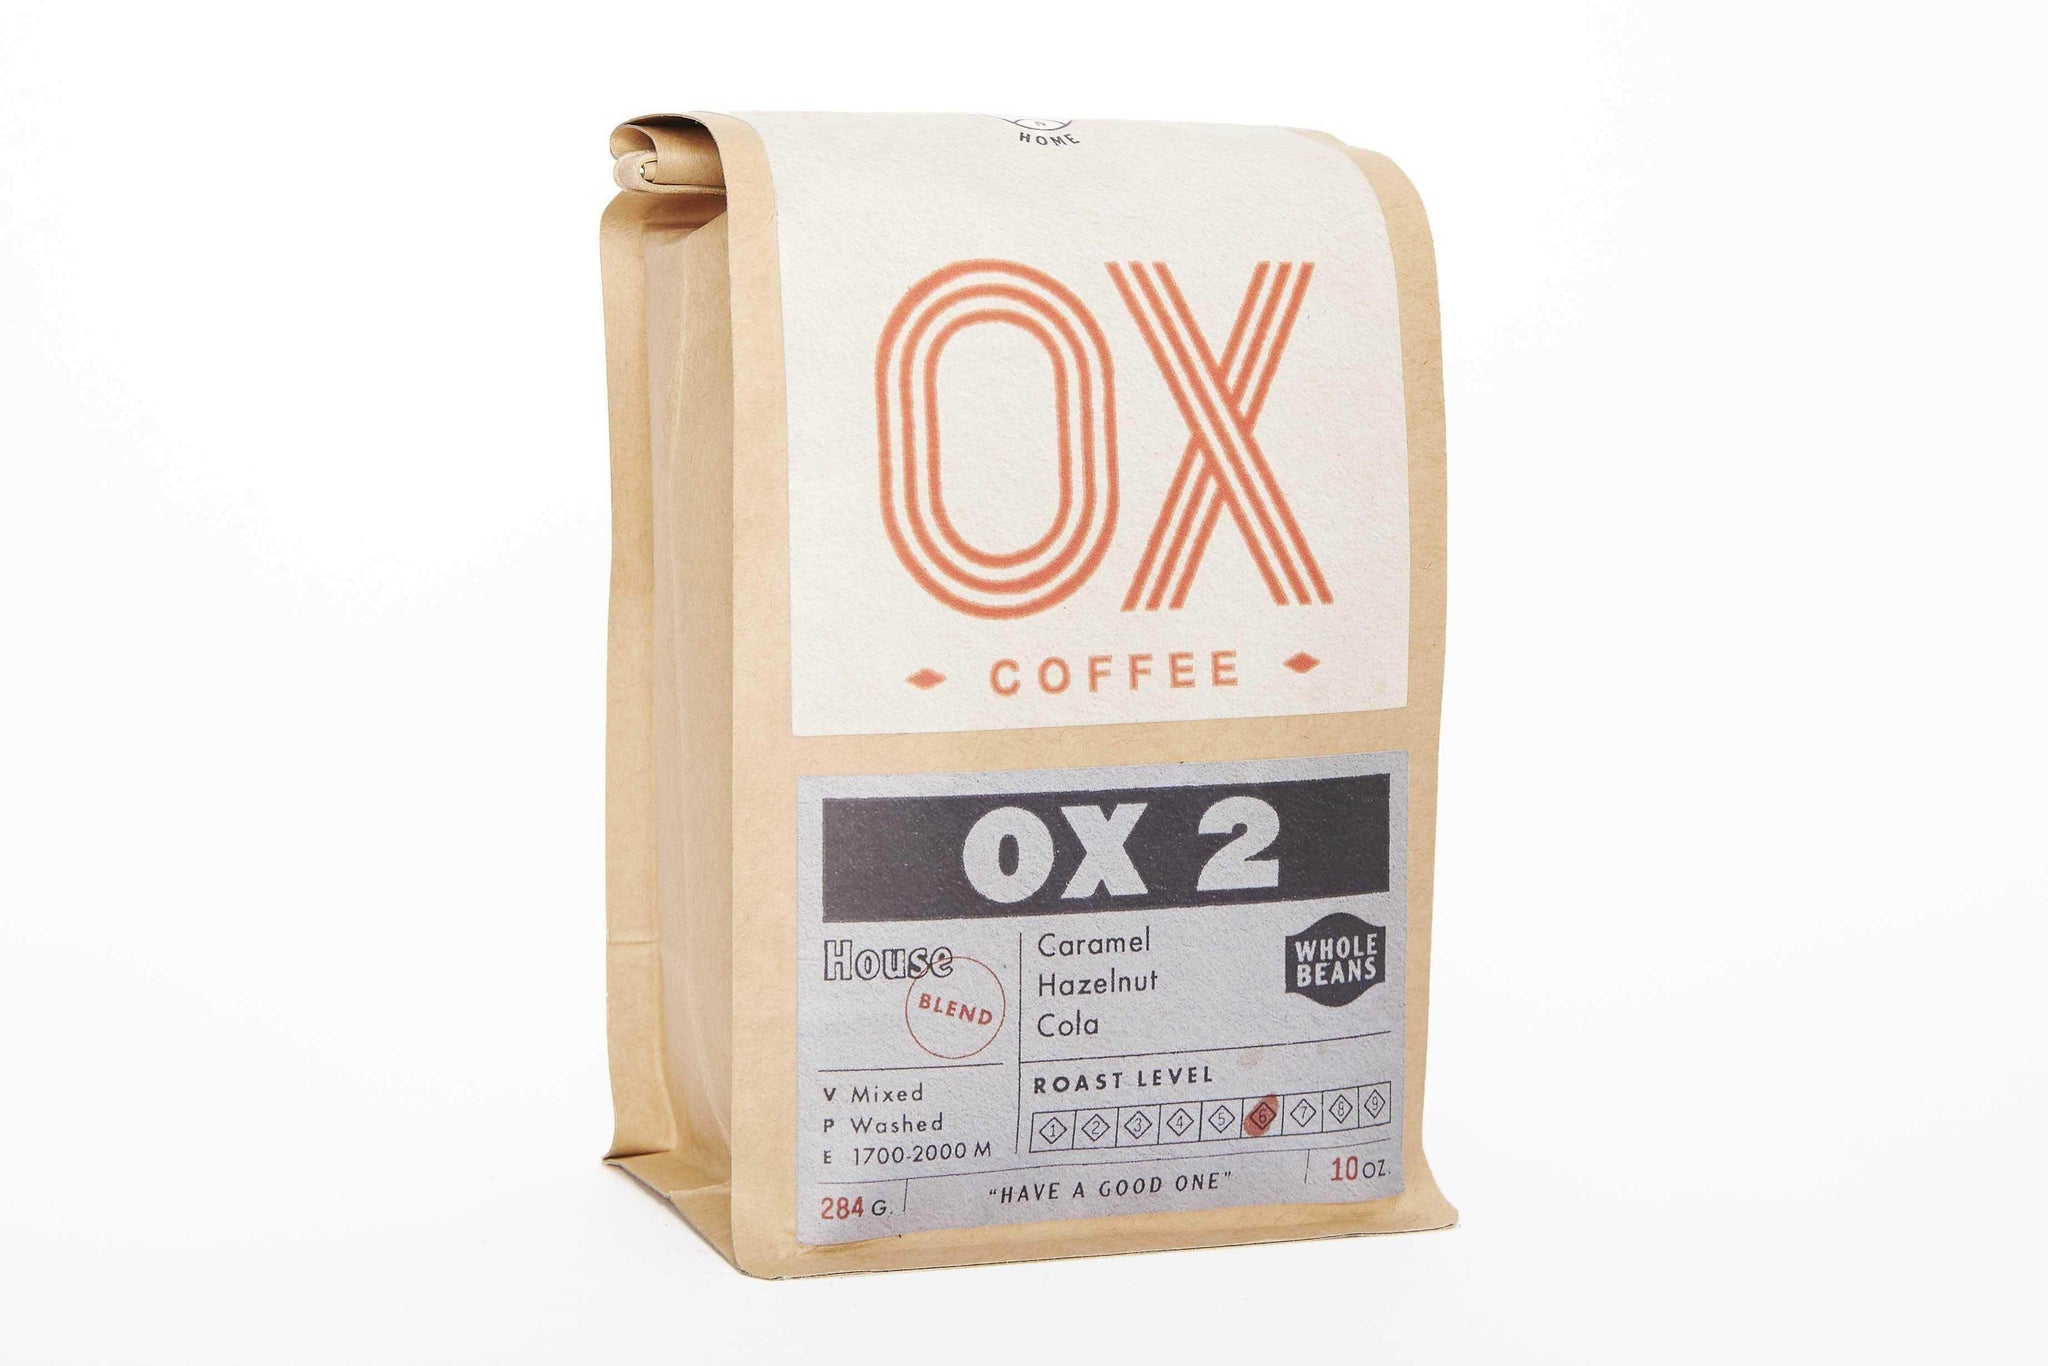 OX 2 | OX Coffee Roasters | Dript Coffee Co.